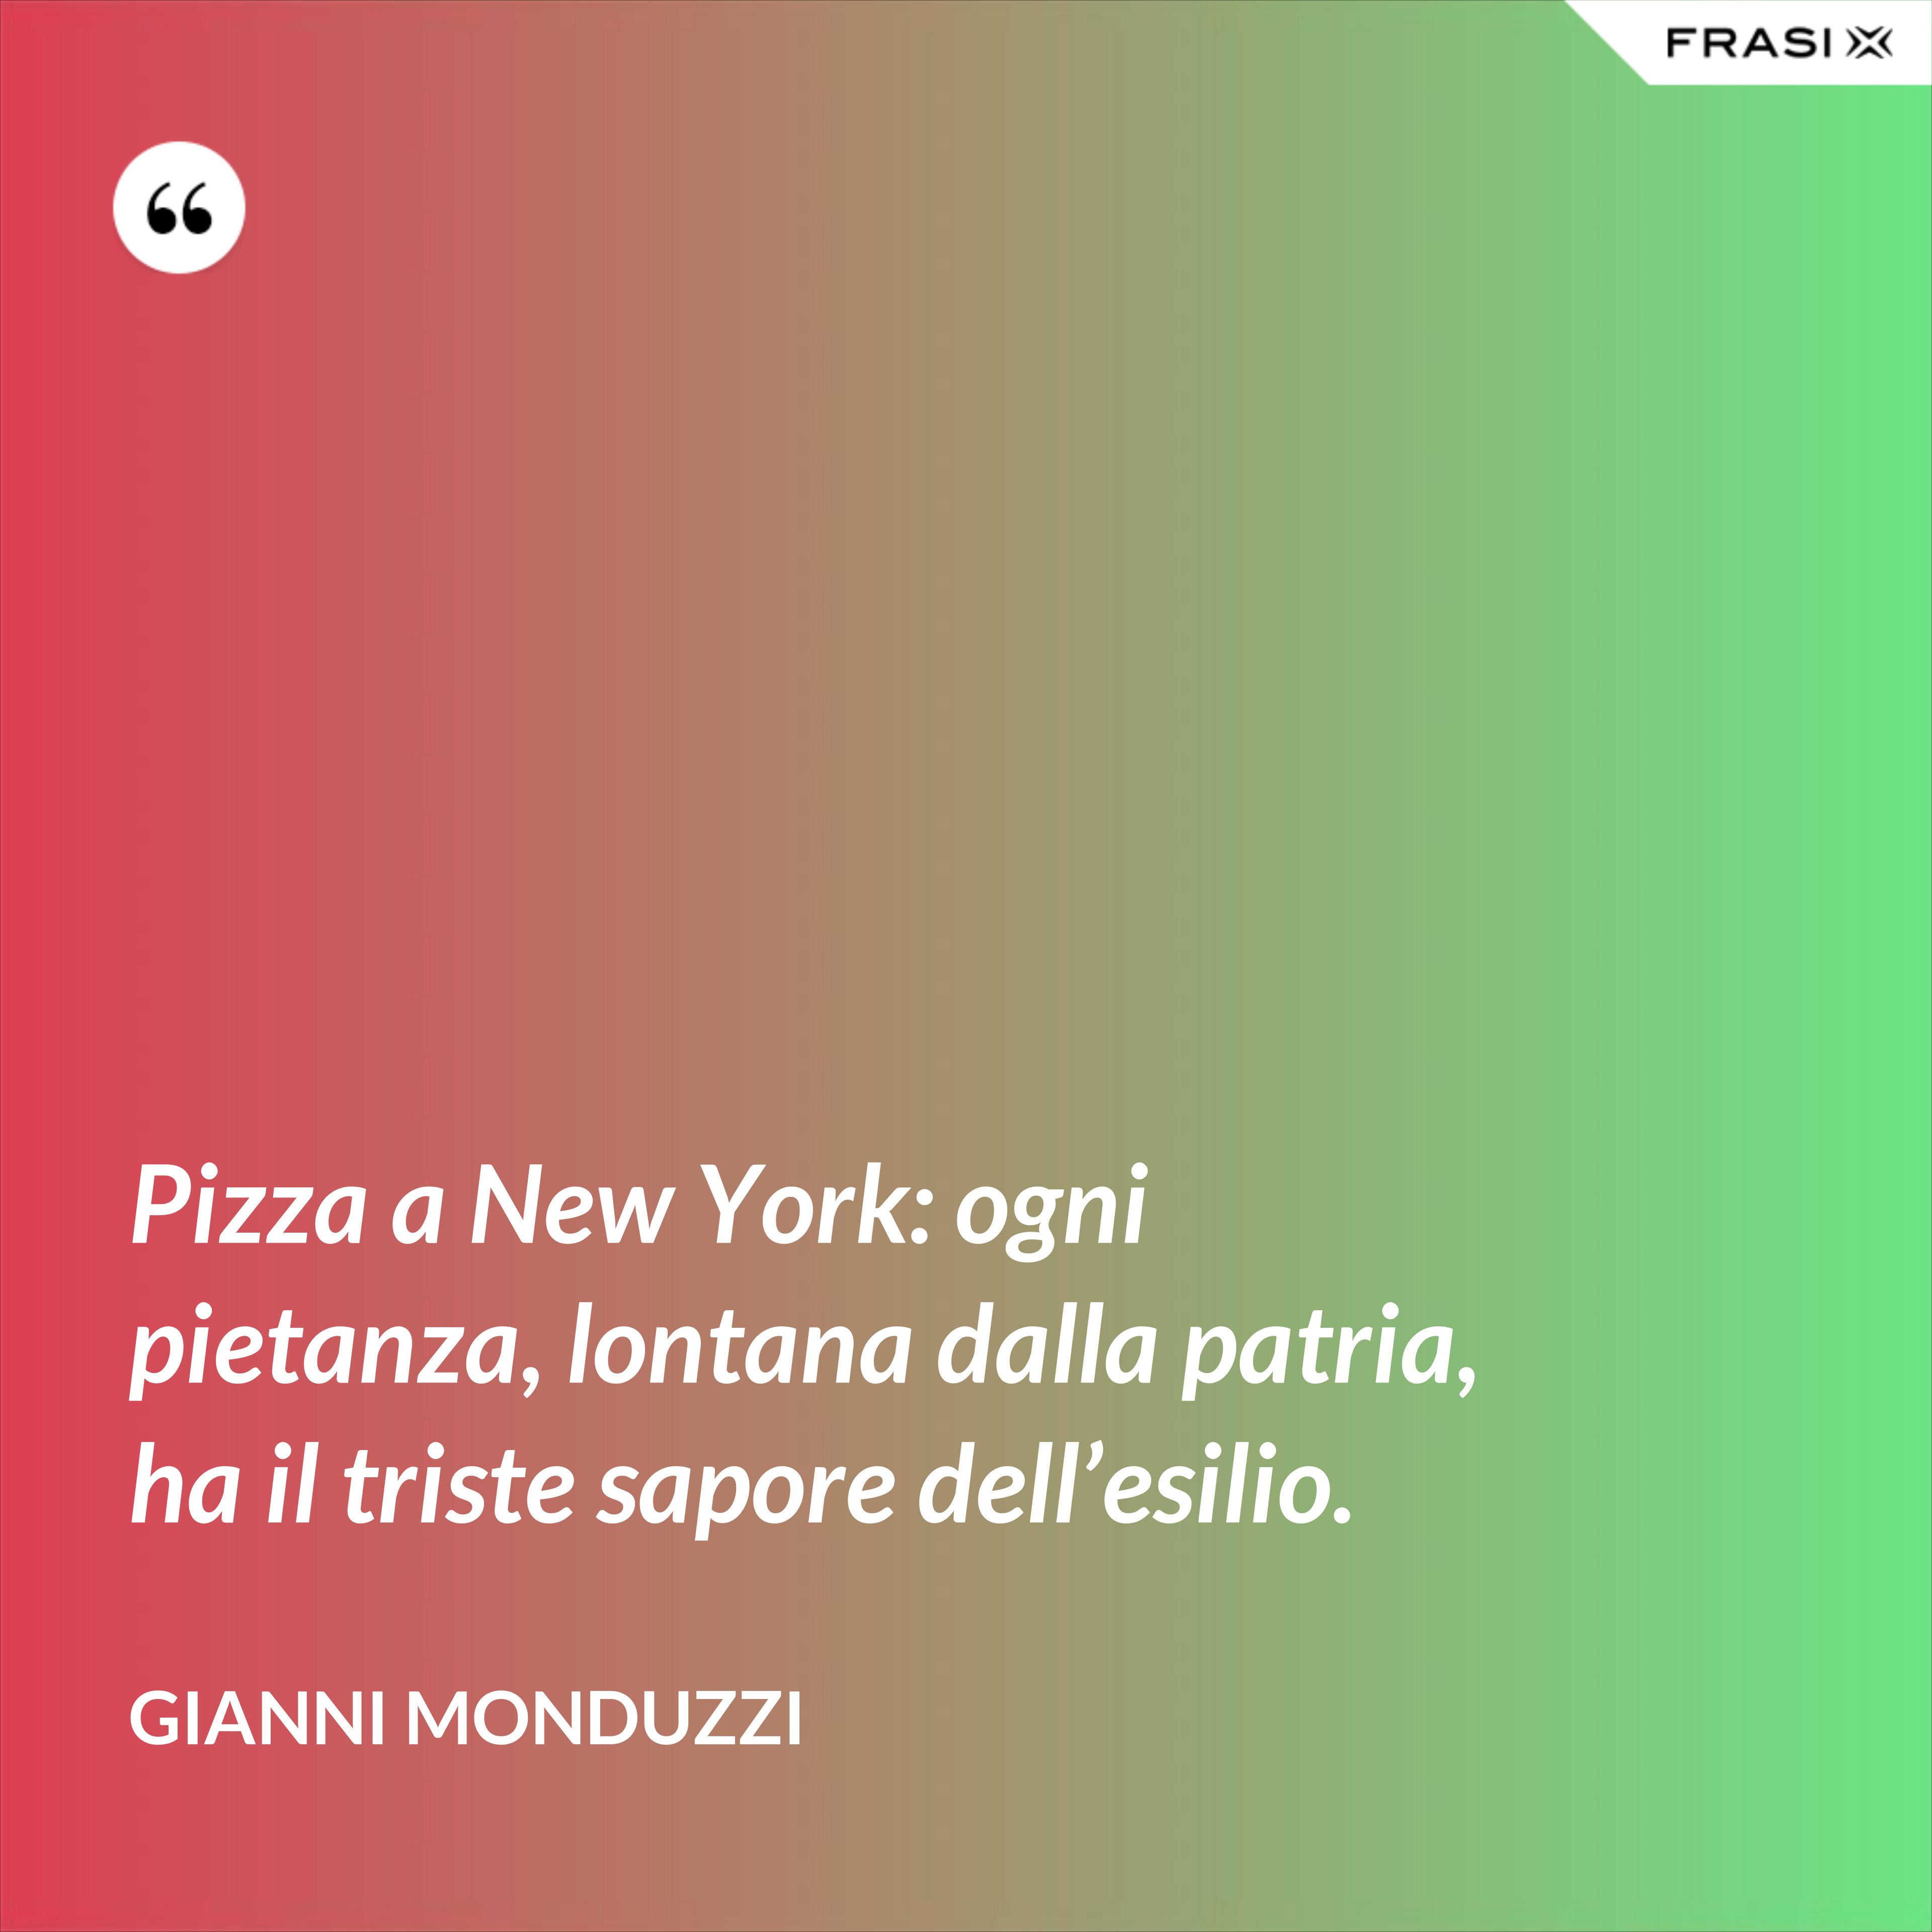 Pizza a New York: ogni pietanza, lontana dalla patria, ha il triste sapore dell’esilio. - Gianni Monduzzi